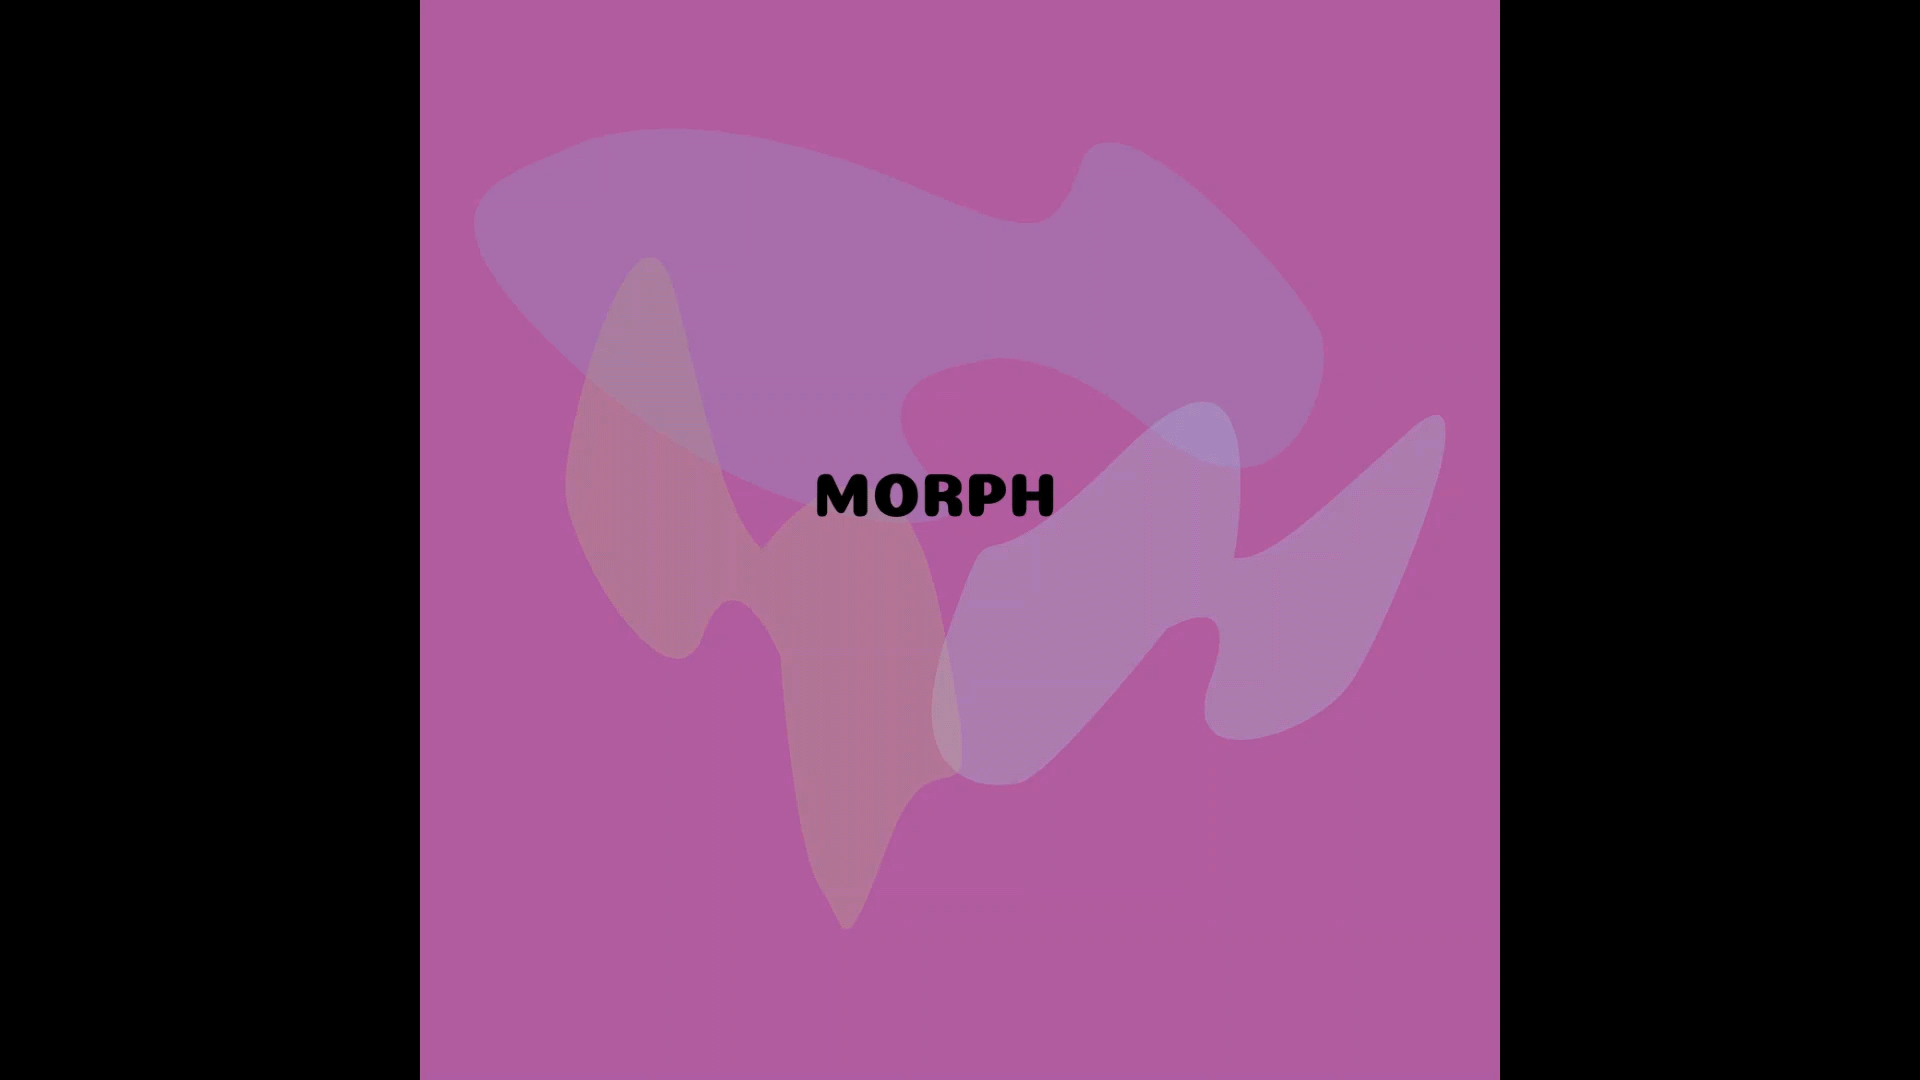 MORPH exhibition